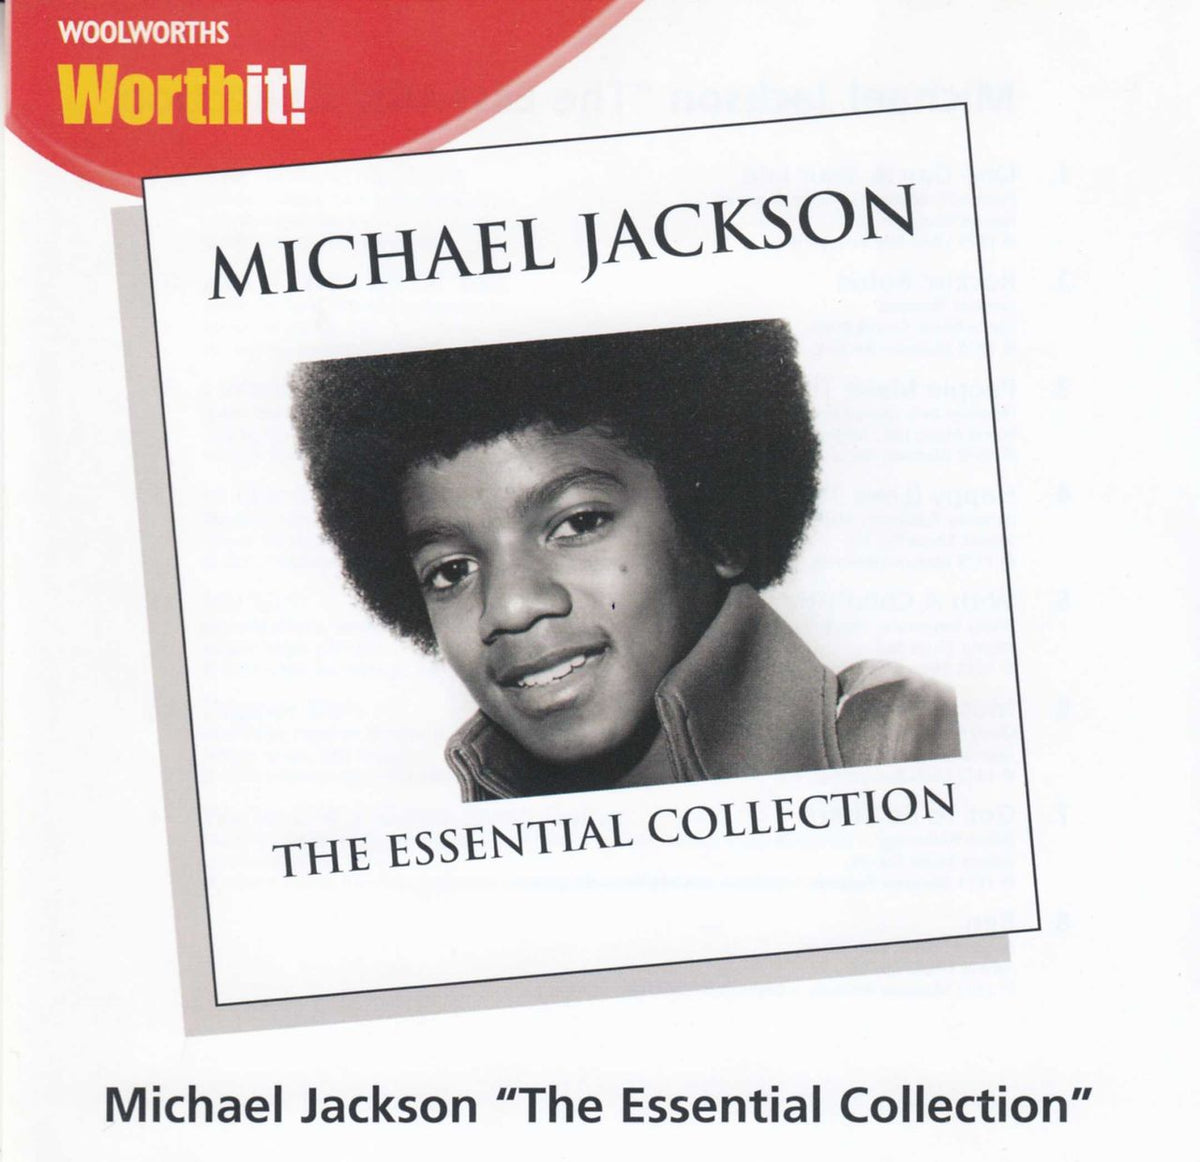 Michael Jackson This Is It UK 2-CD album set — RareVinyl.com